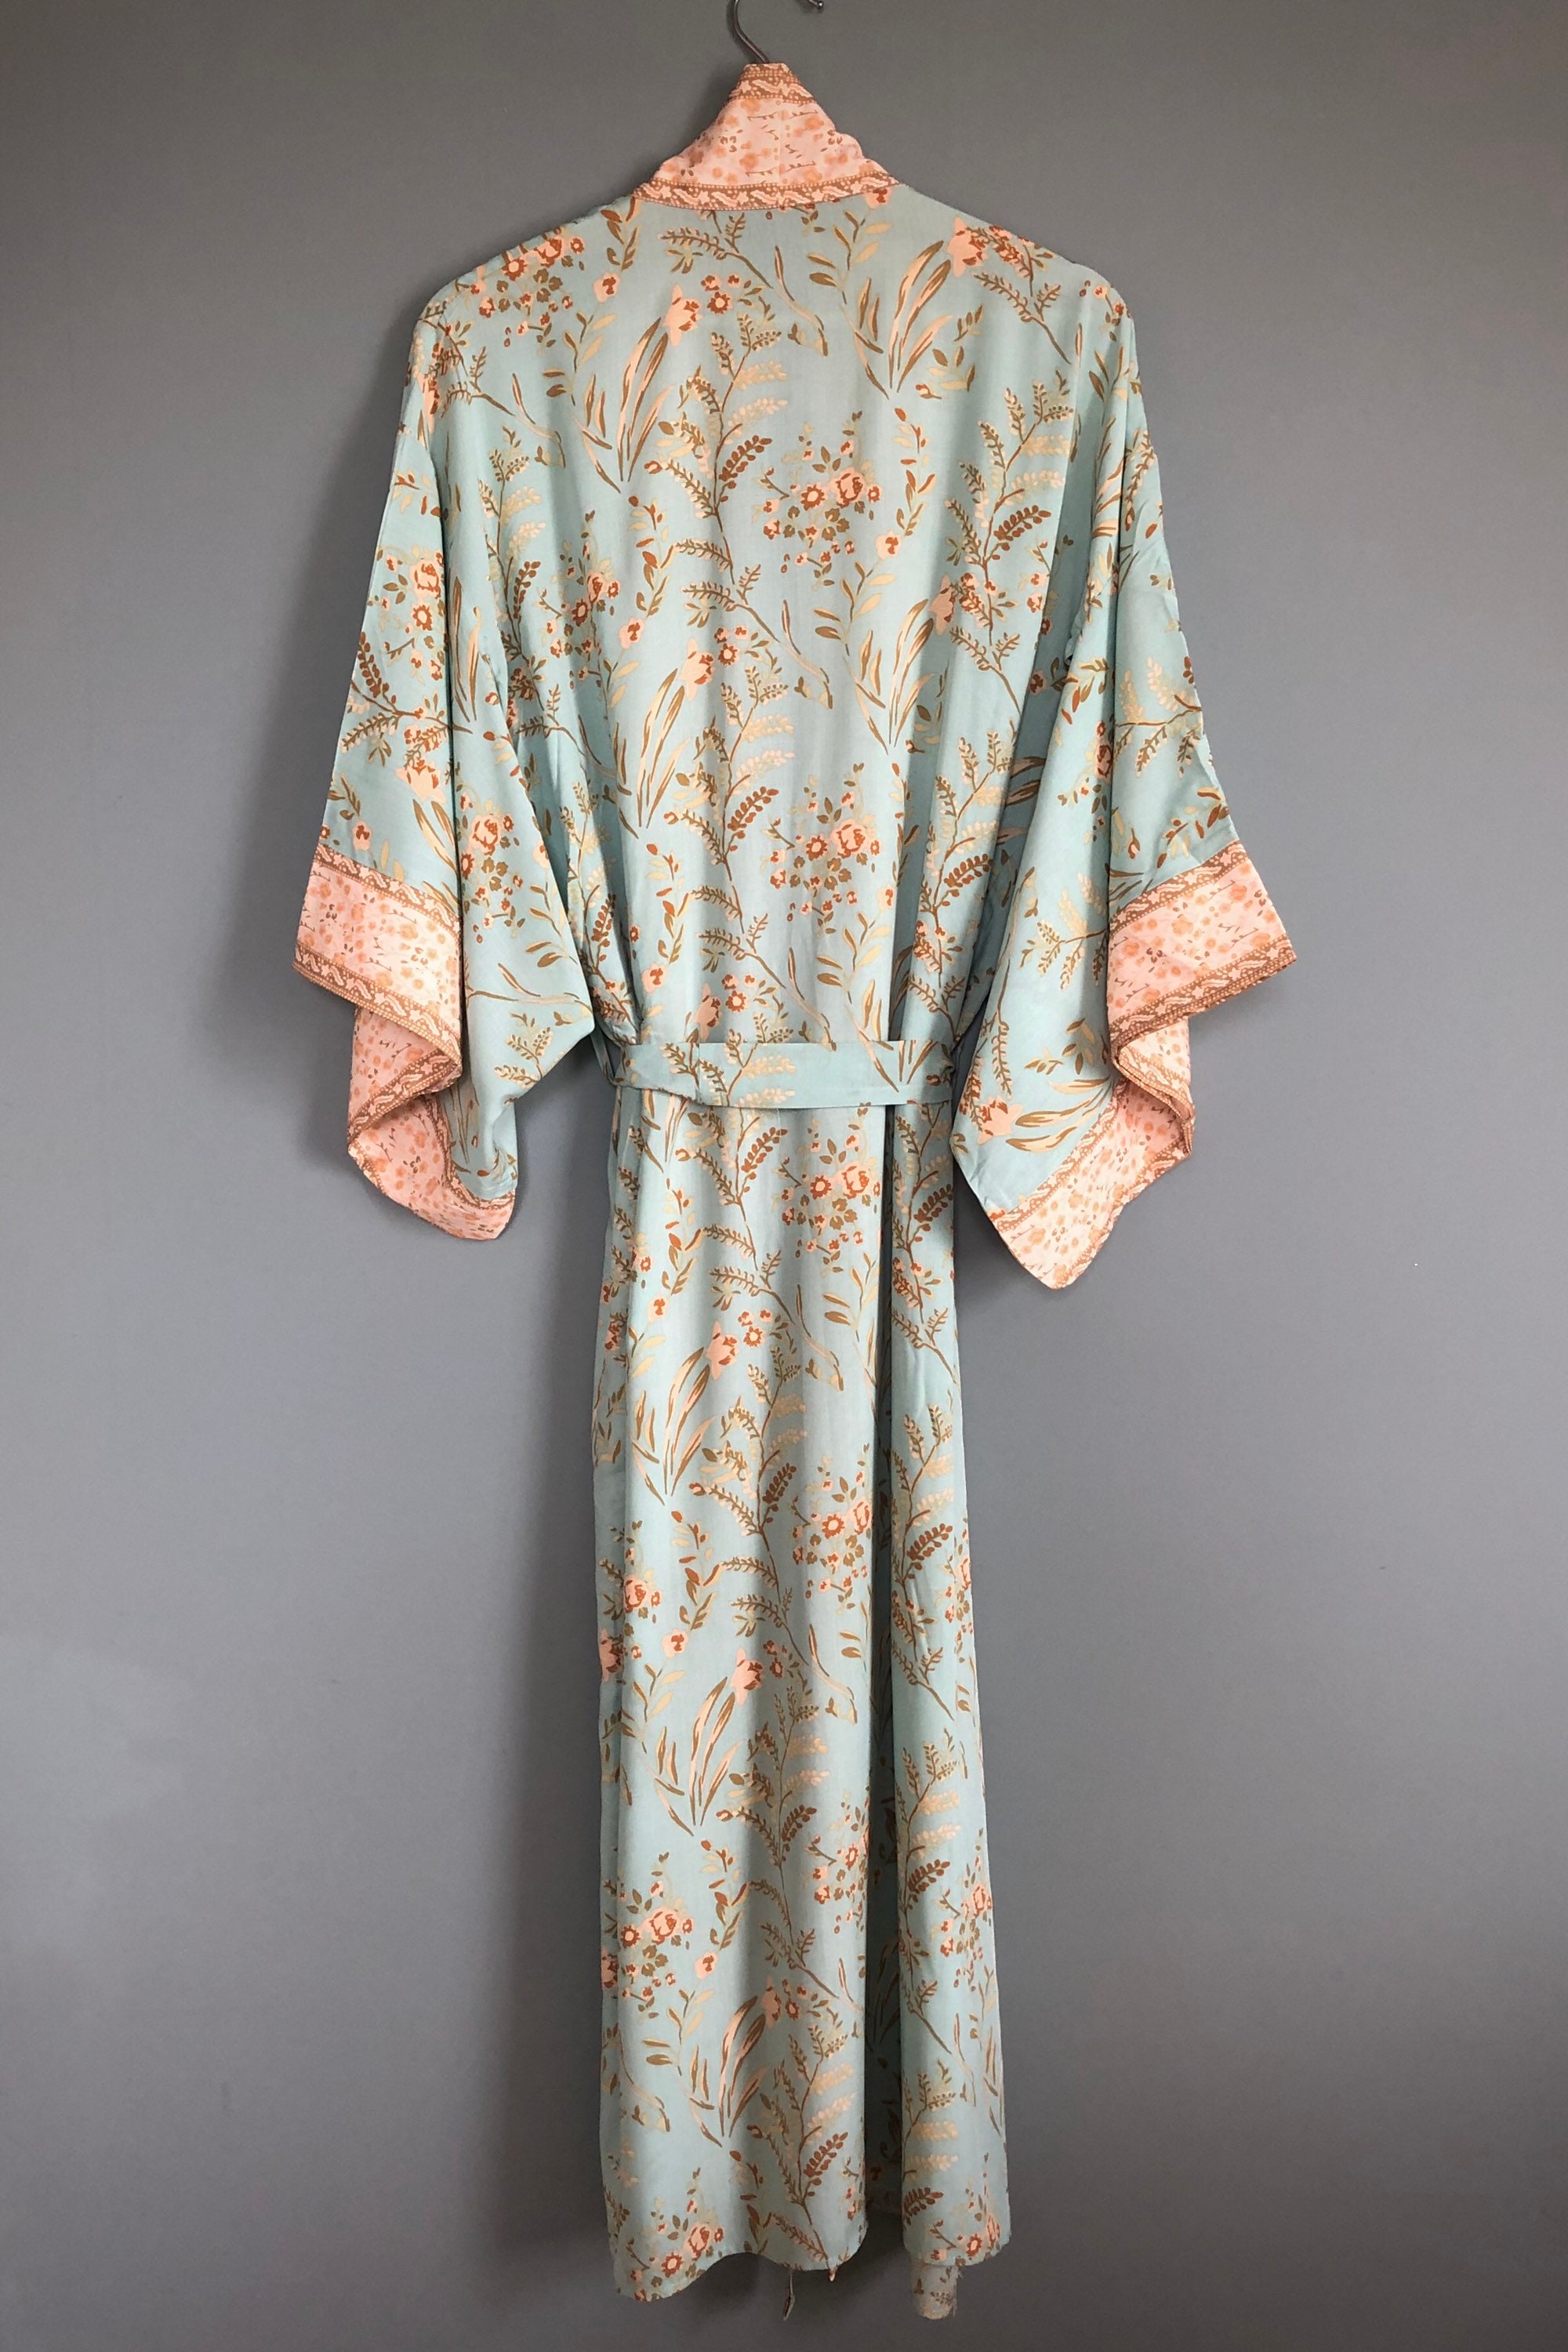 Kimono Robe Mint Green Dressing Gown Vintage Style Cotton - Etsy UK